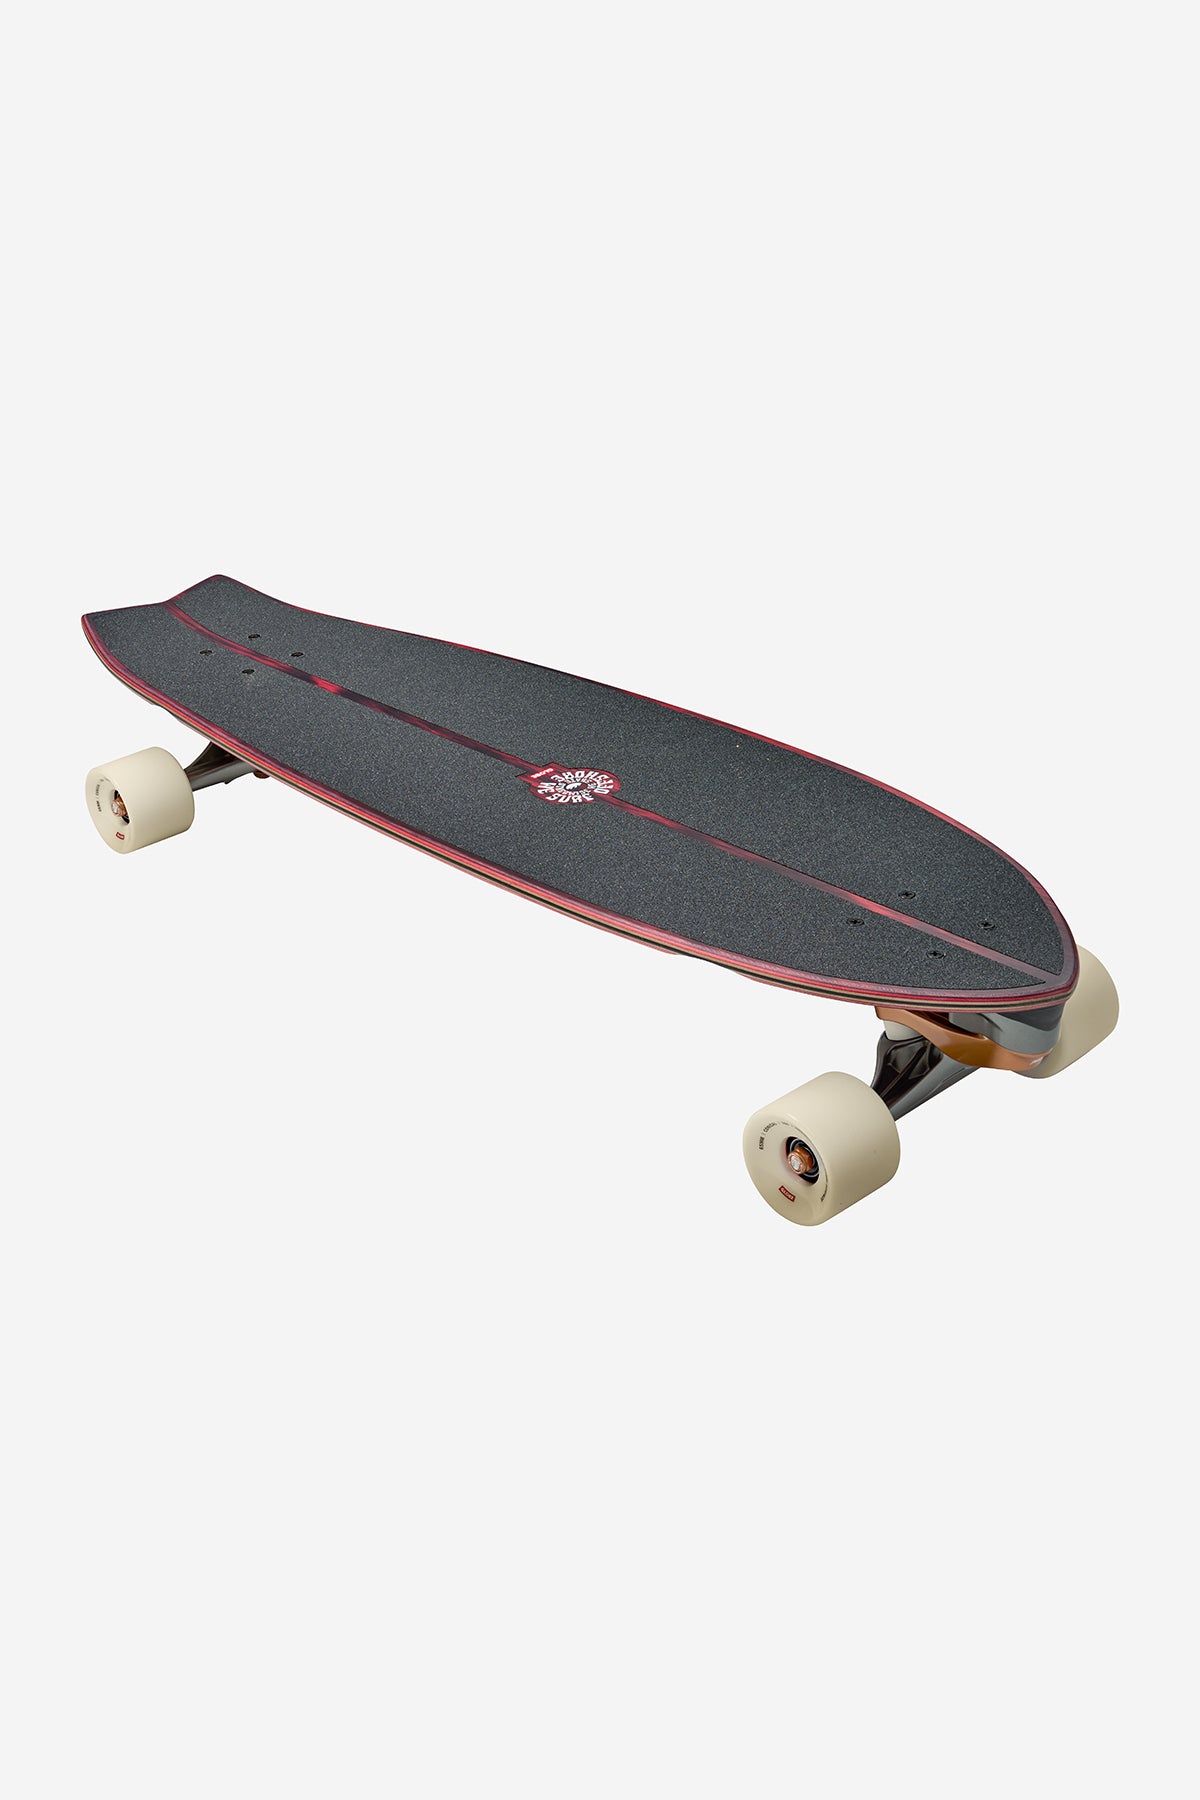 chroom ss laatste in 33" branding skateboard